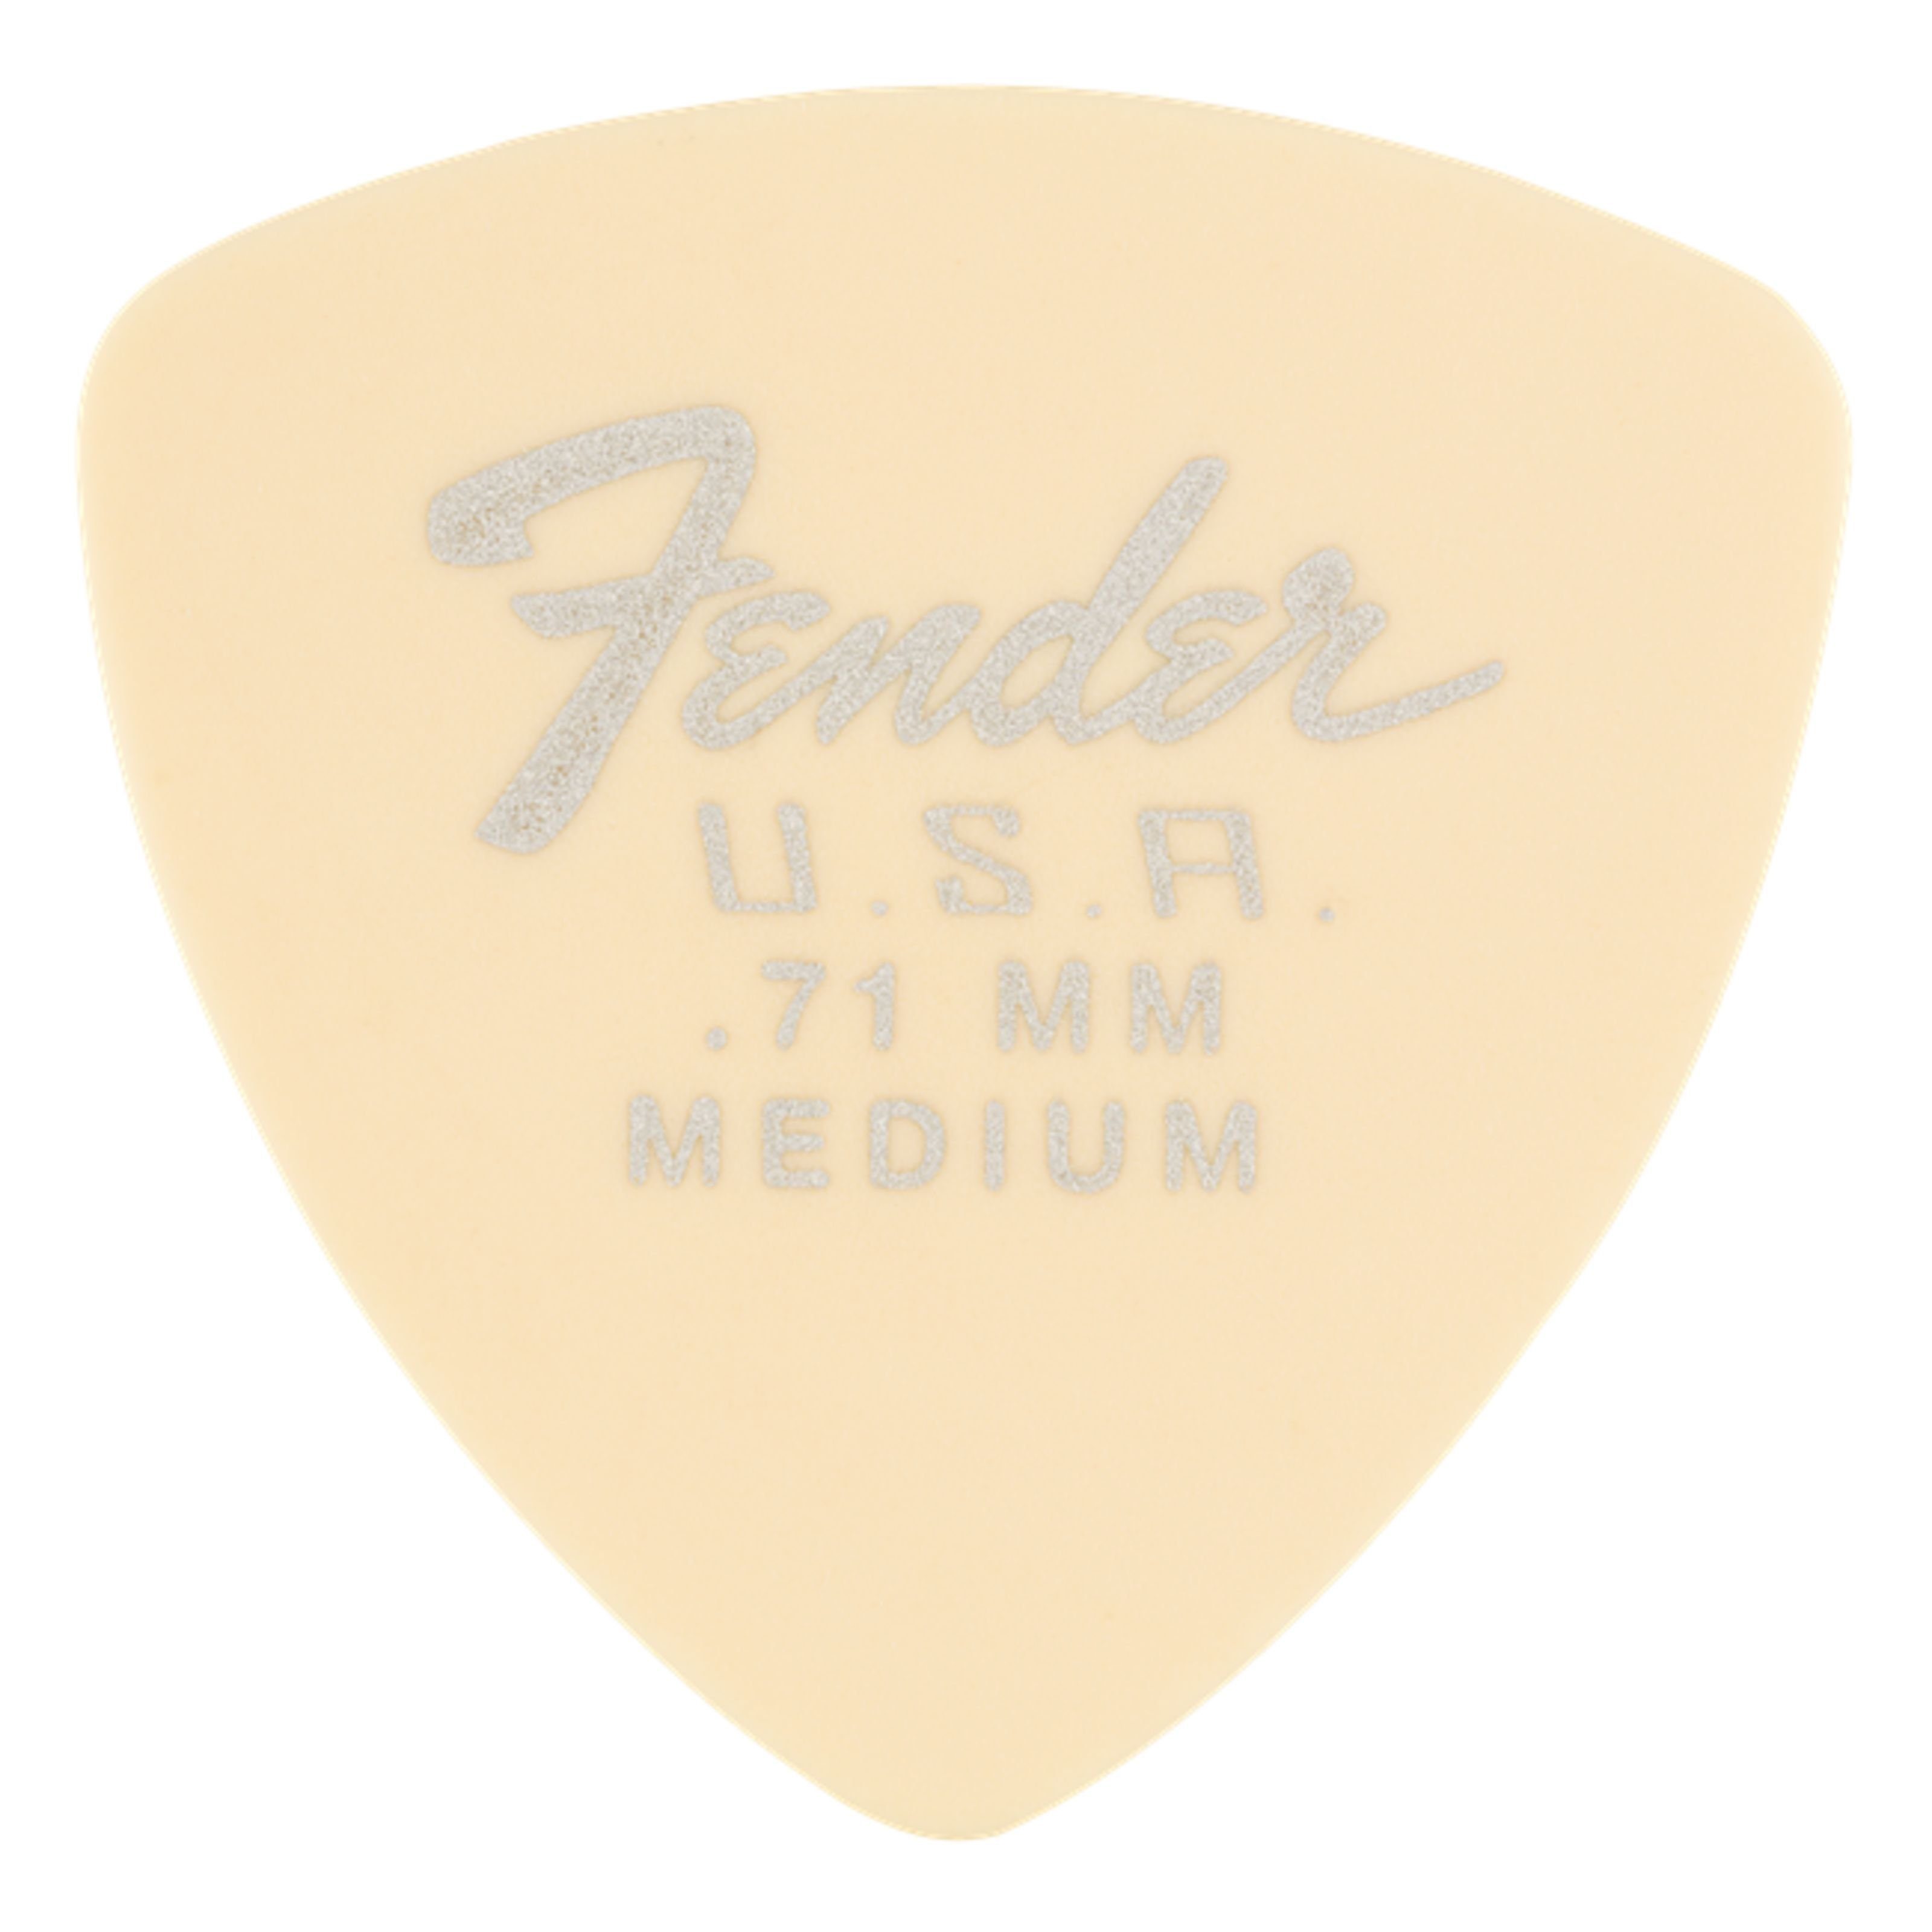 Fender 346 Spielzeug-Musikinstrument, Picks Dura-Tone Set mm 0,71 Plektren -